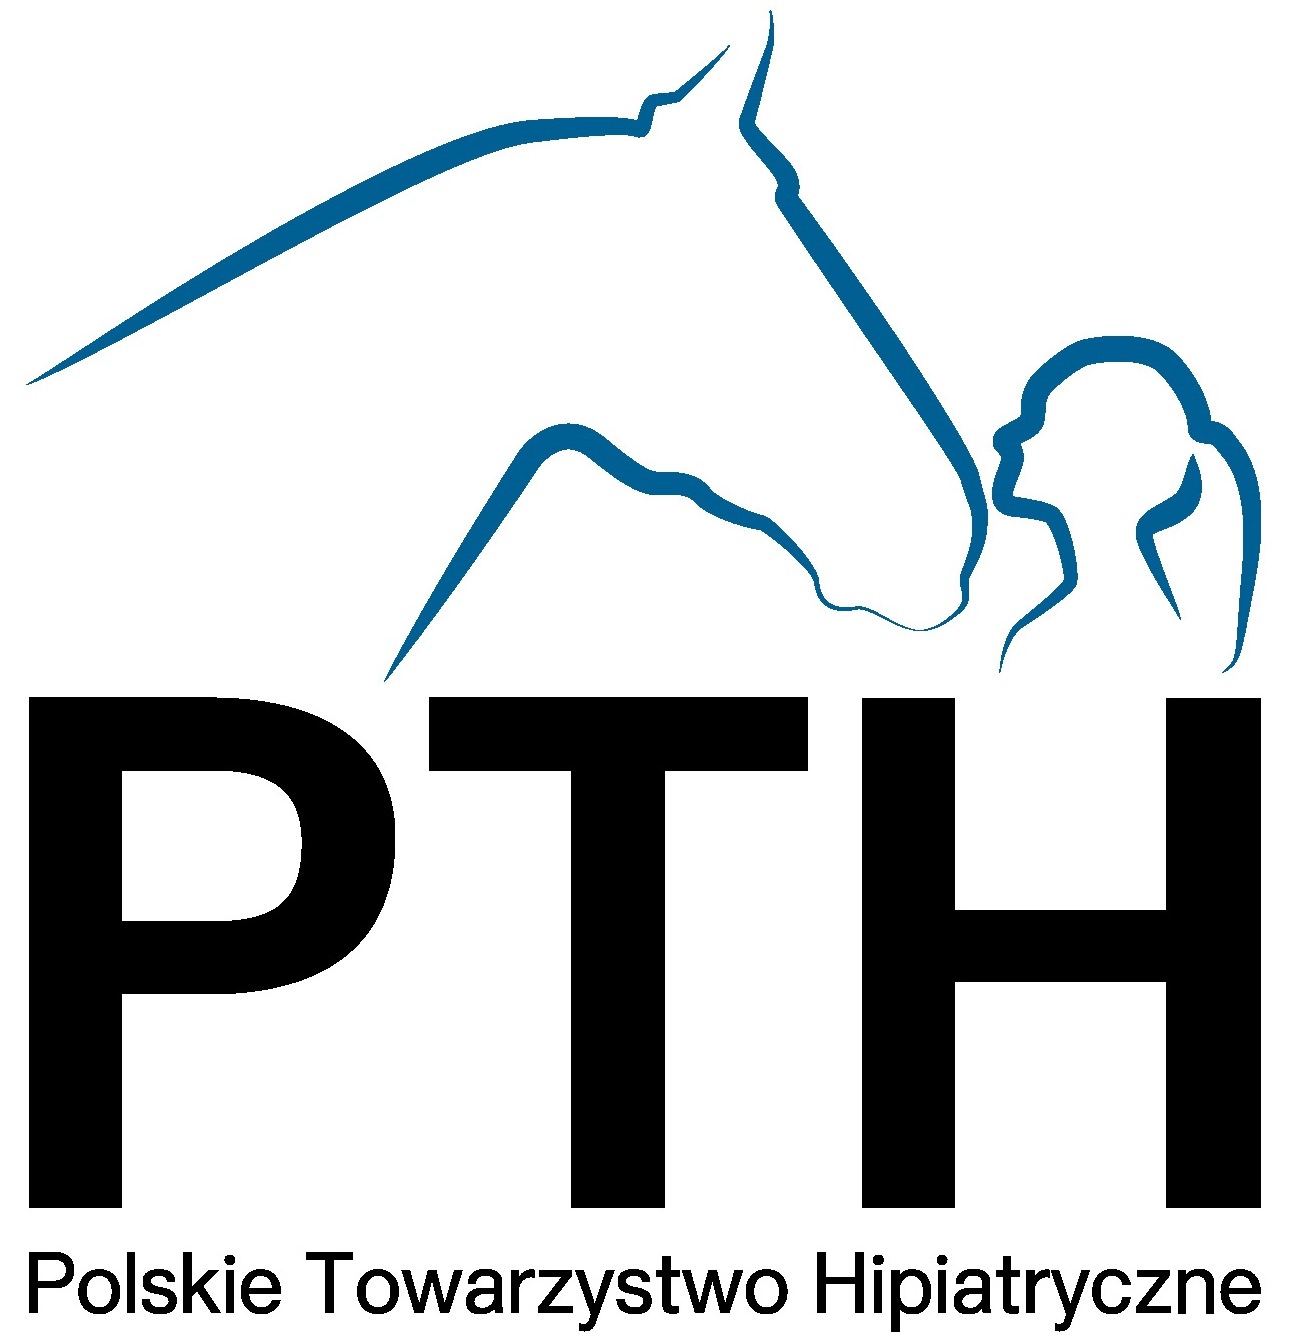 Polskie Towarzystwo Hipiatryczne